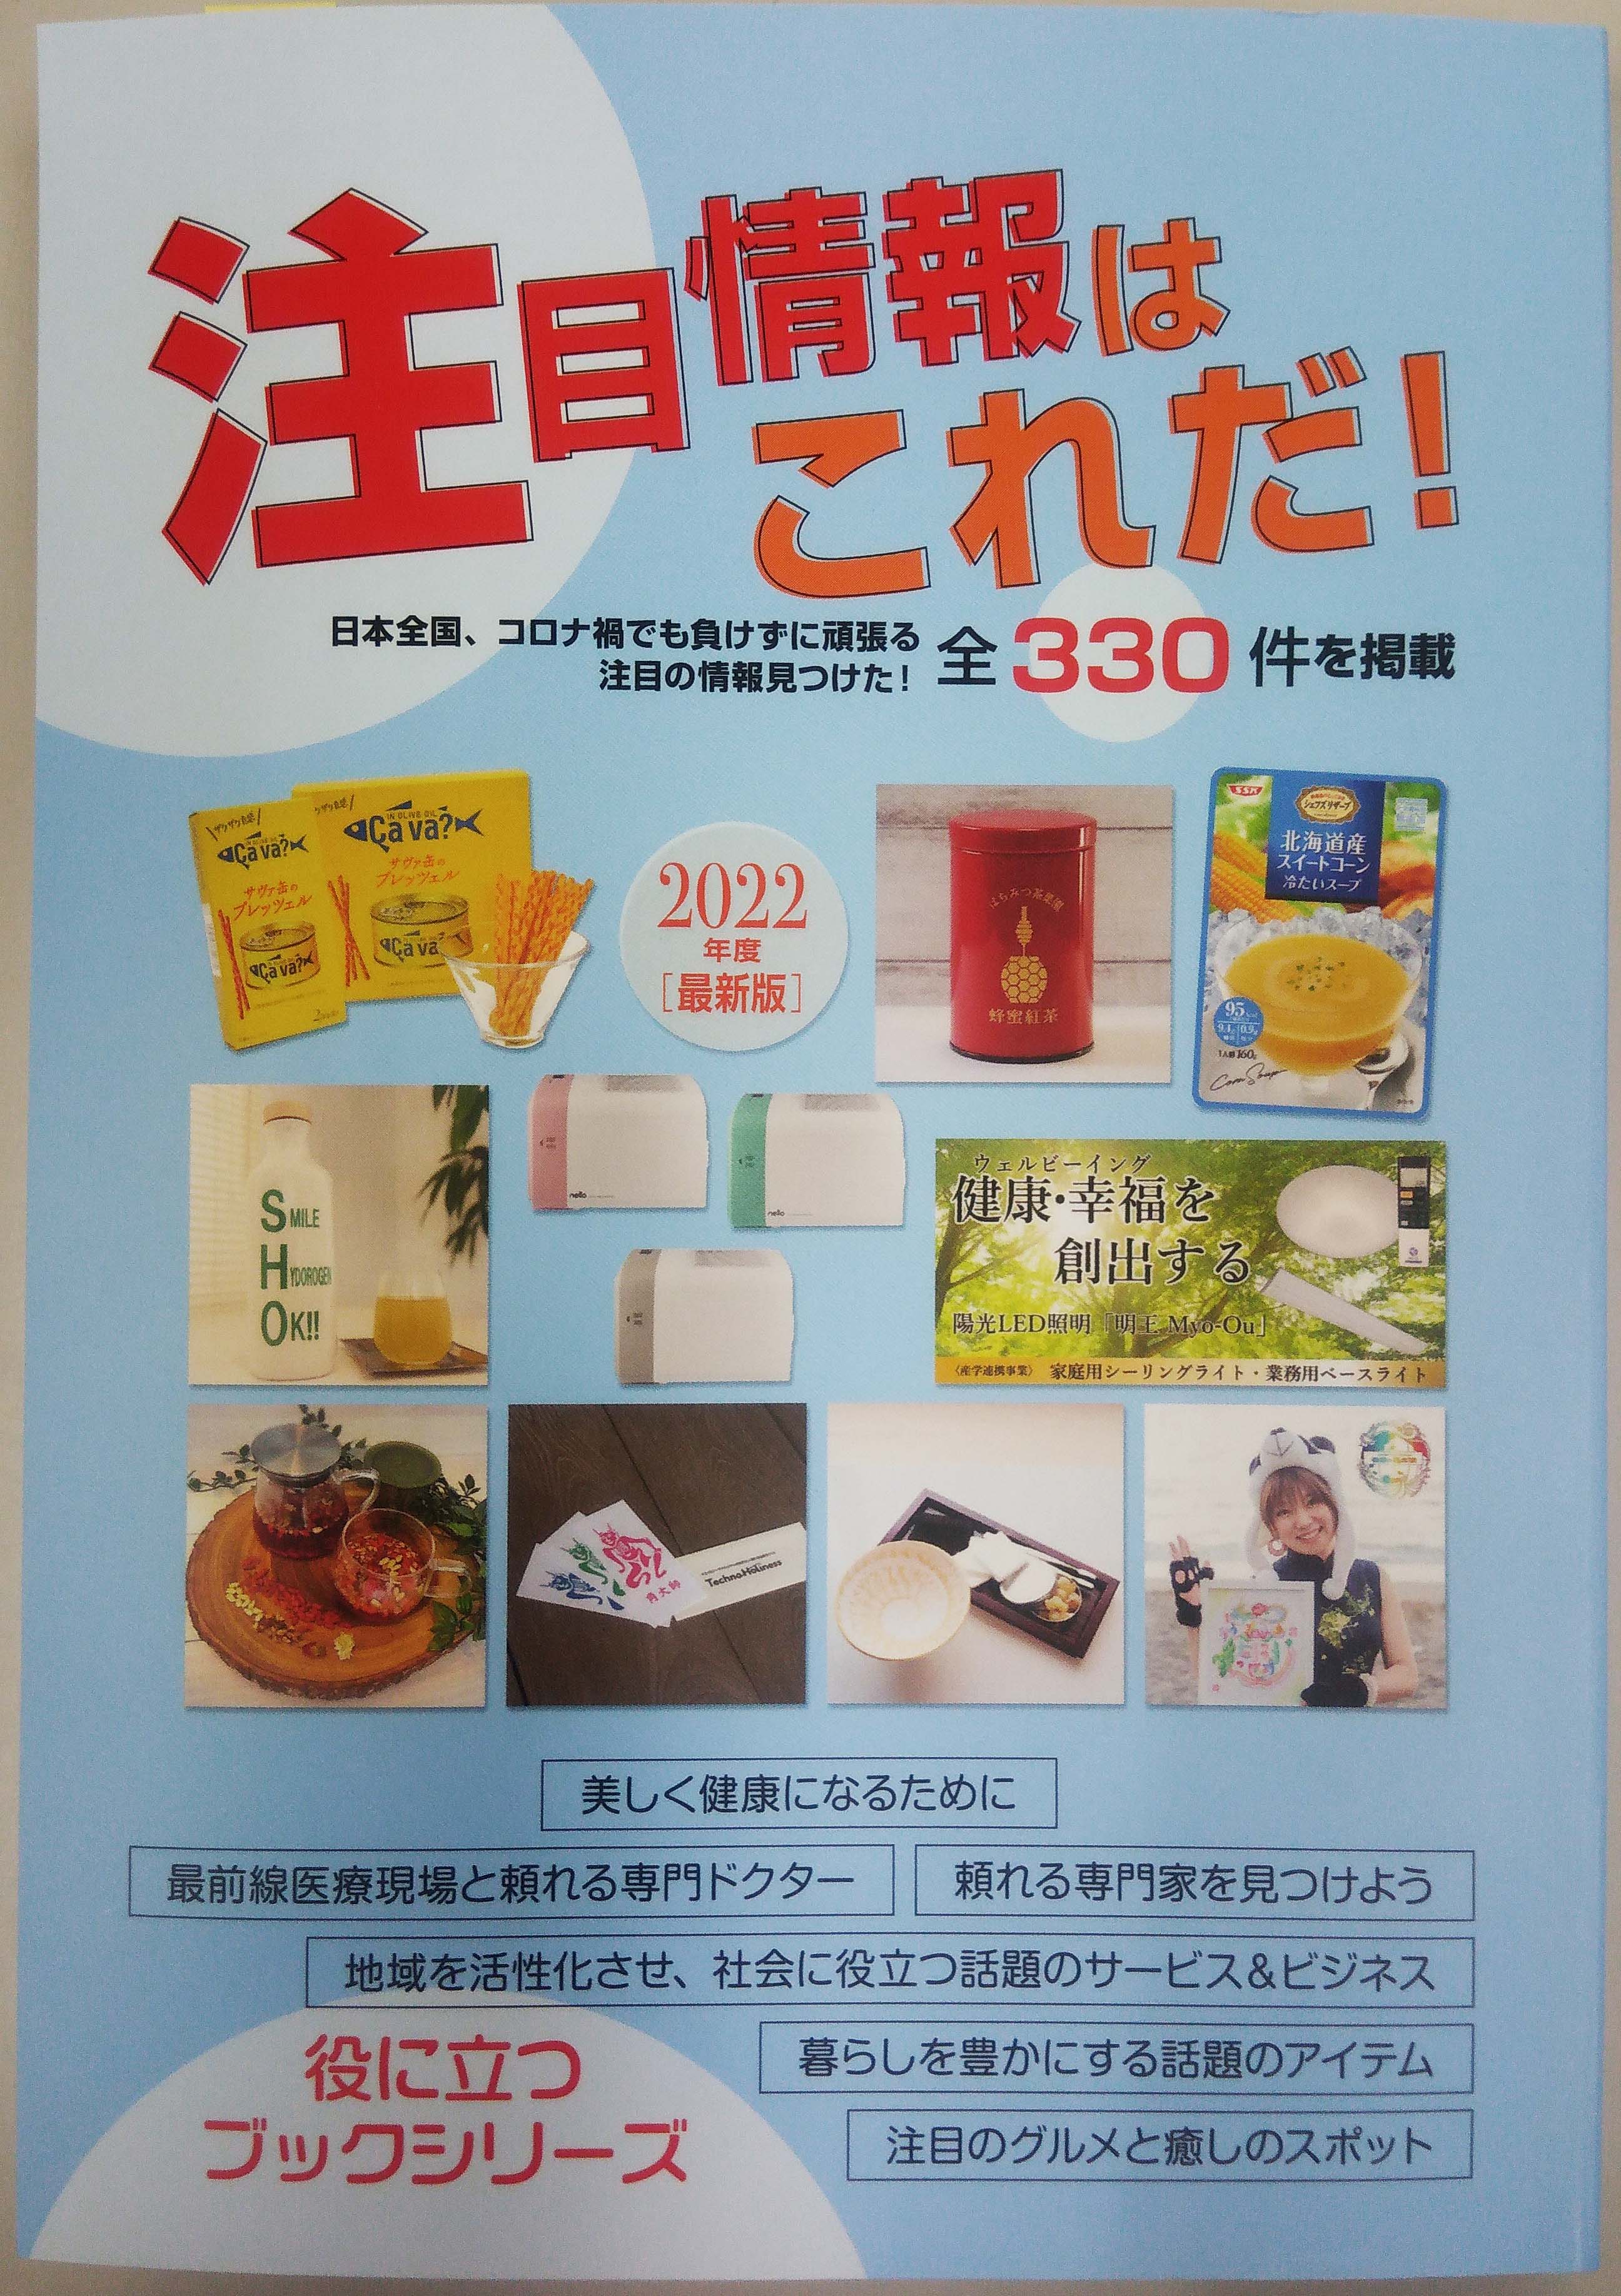 産経新聞東京版に広告を掲載しました